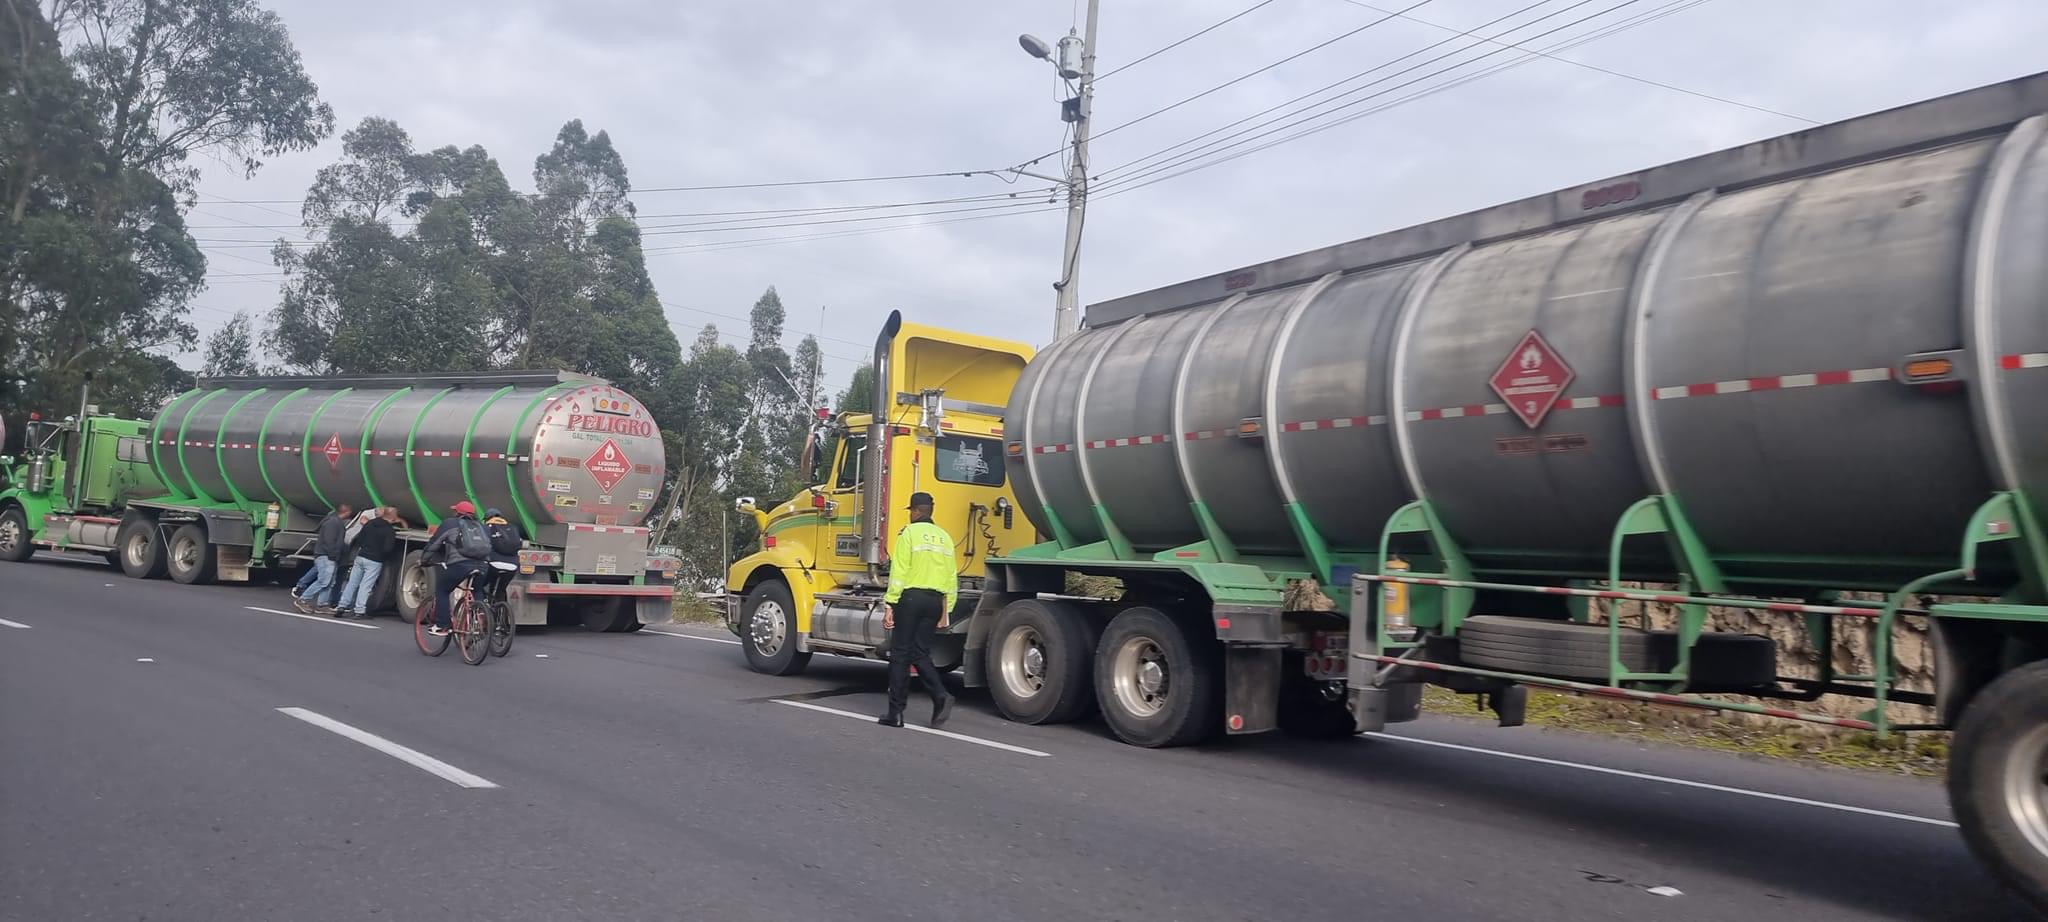 Transporte. Los primeros convoyes colombianos circulando en el corredor humanitario.